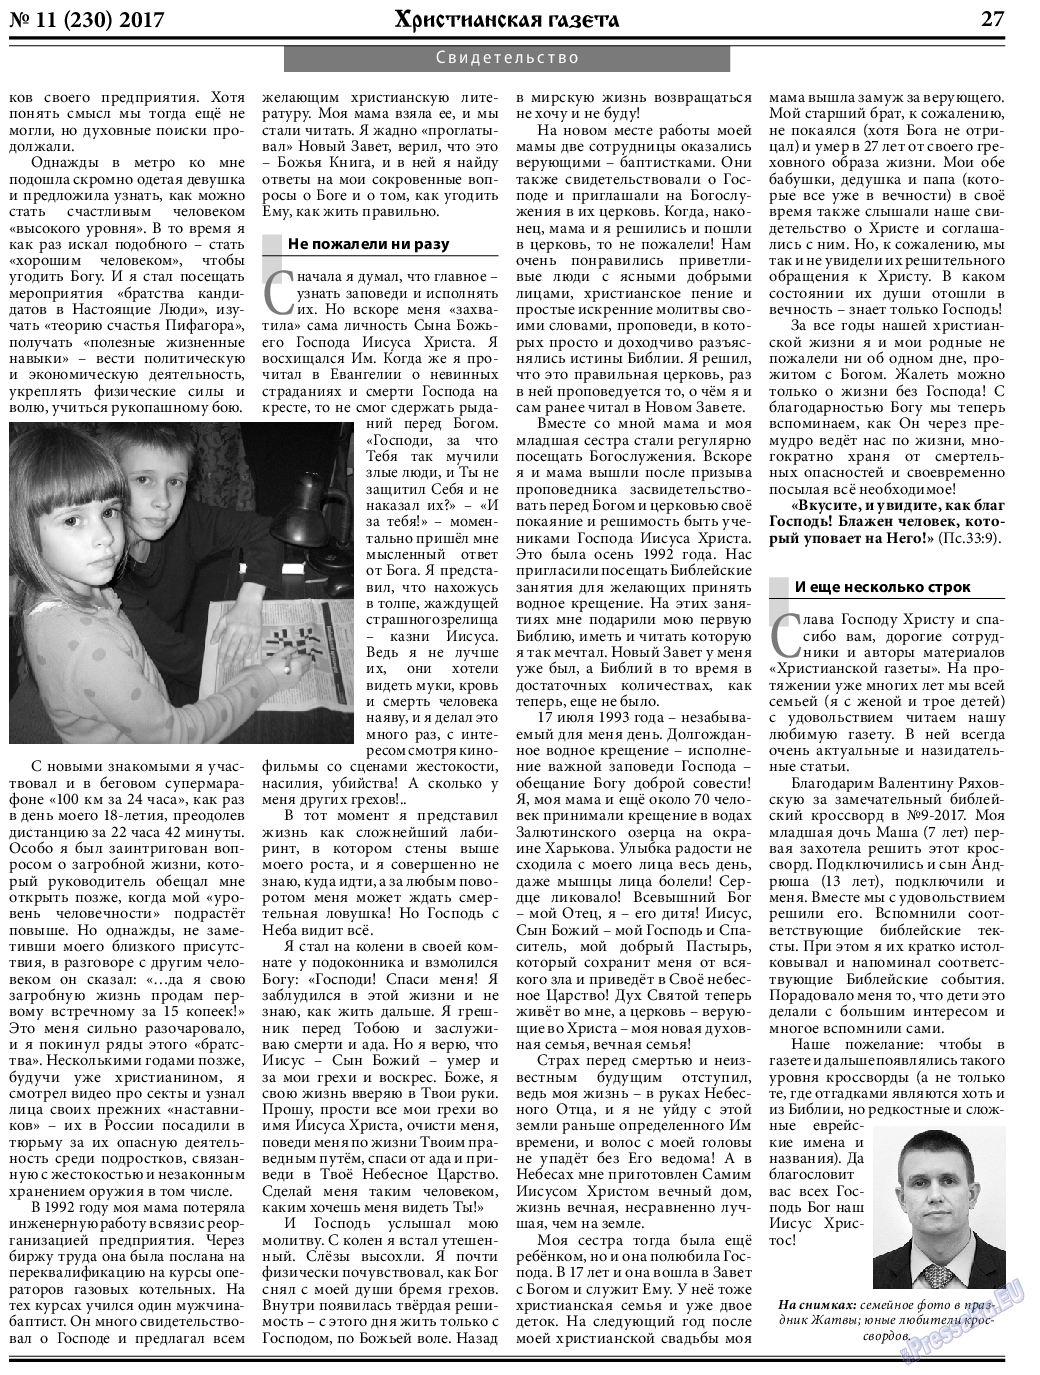 Христианская газета, газета. 2017 №11 стр.27